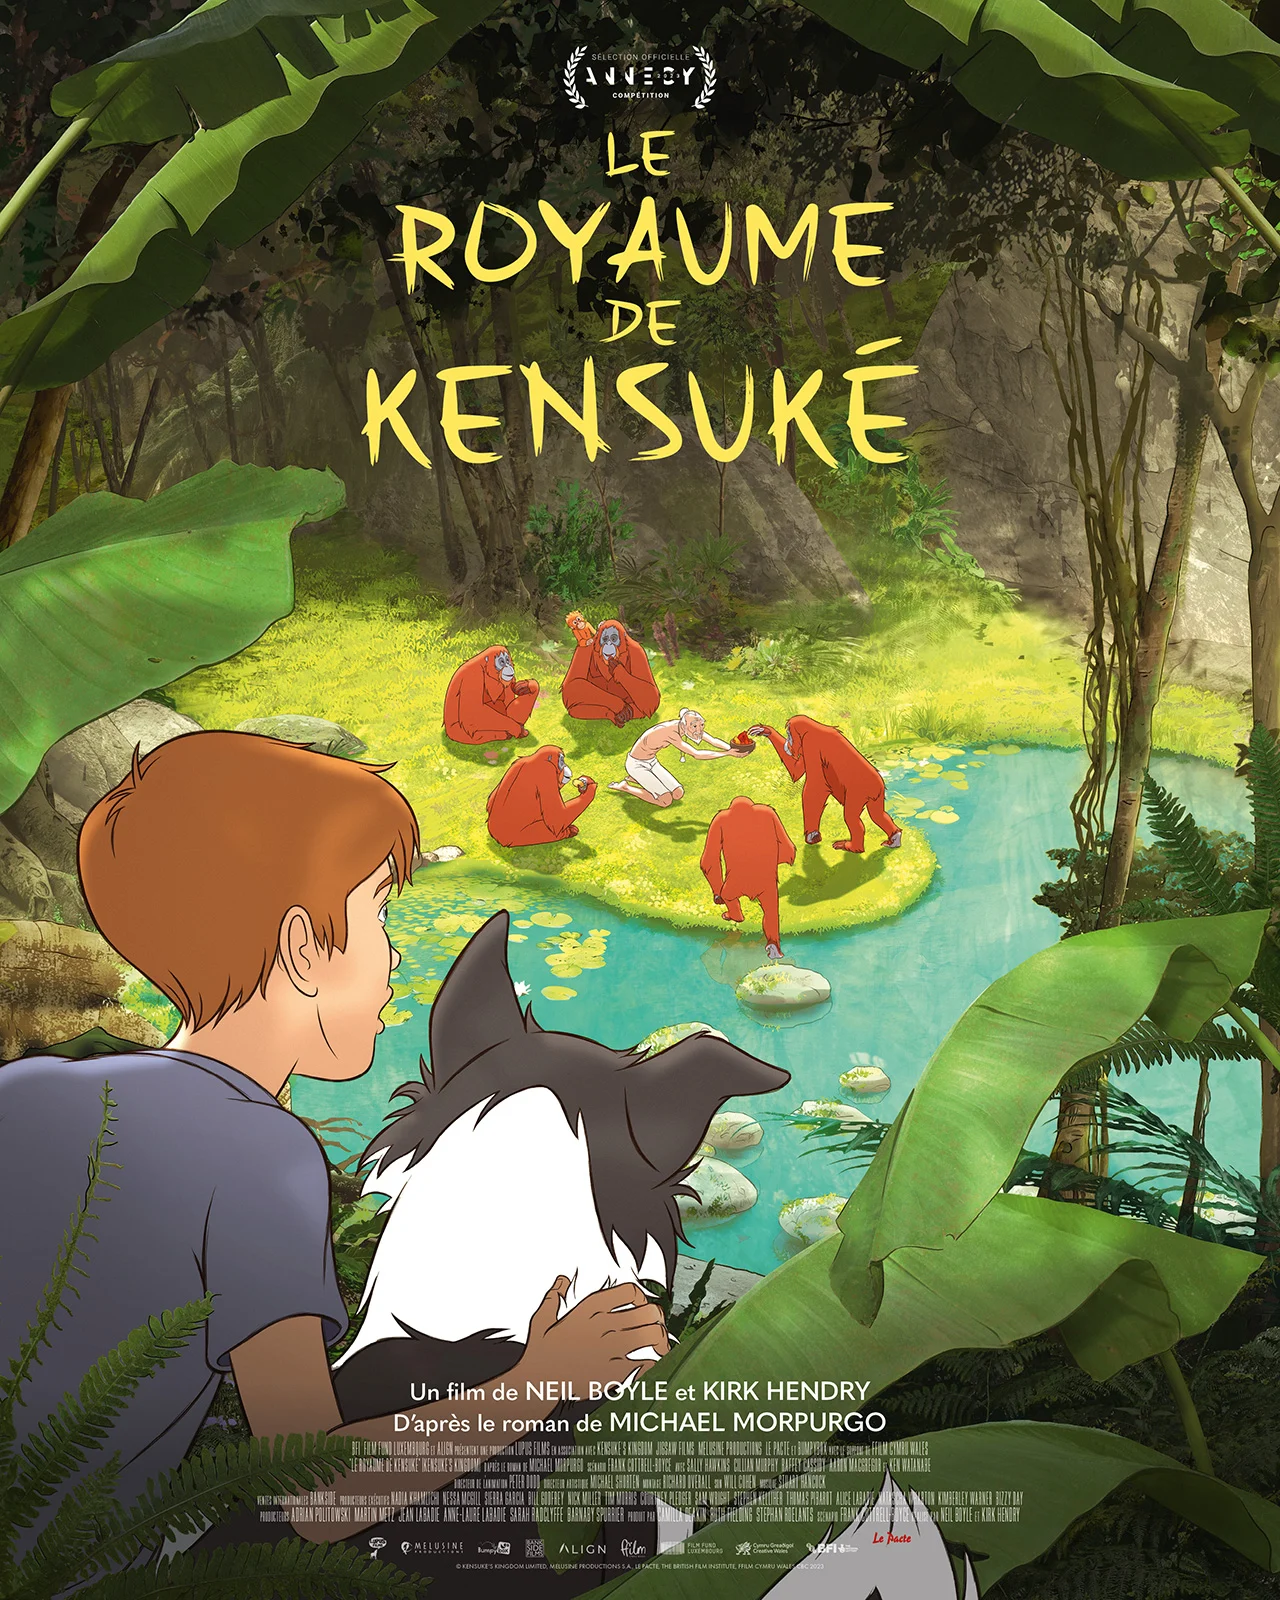 Projection - "Le Royaume de Kensuké" de Neil Boyle et Kirk Hendry